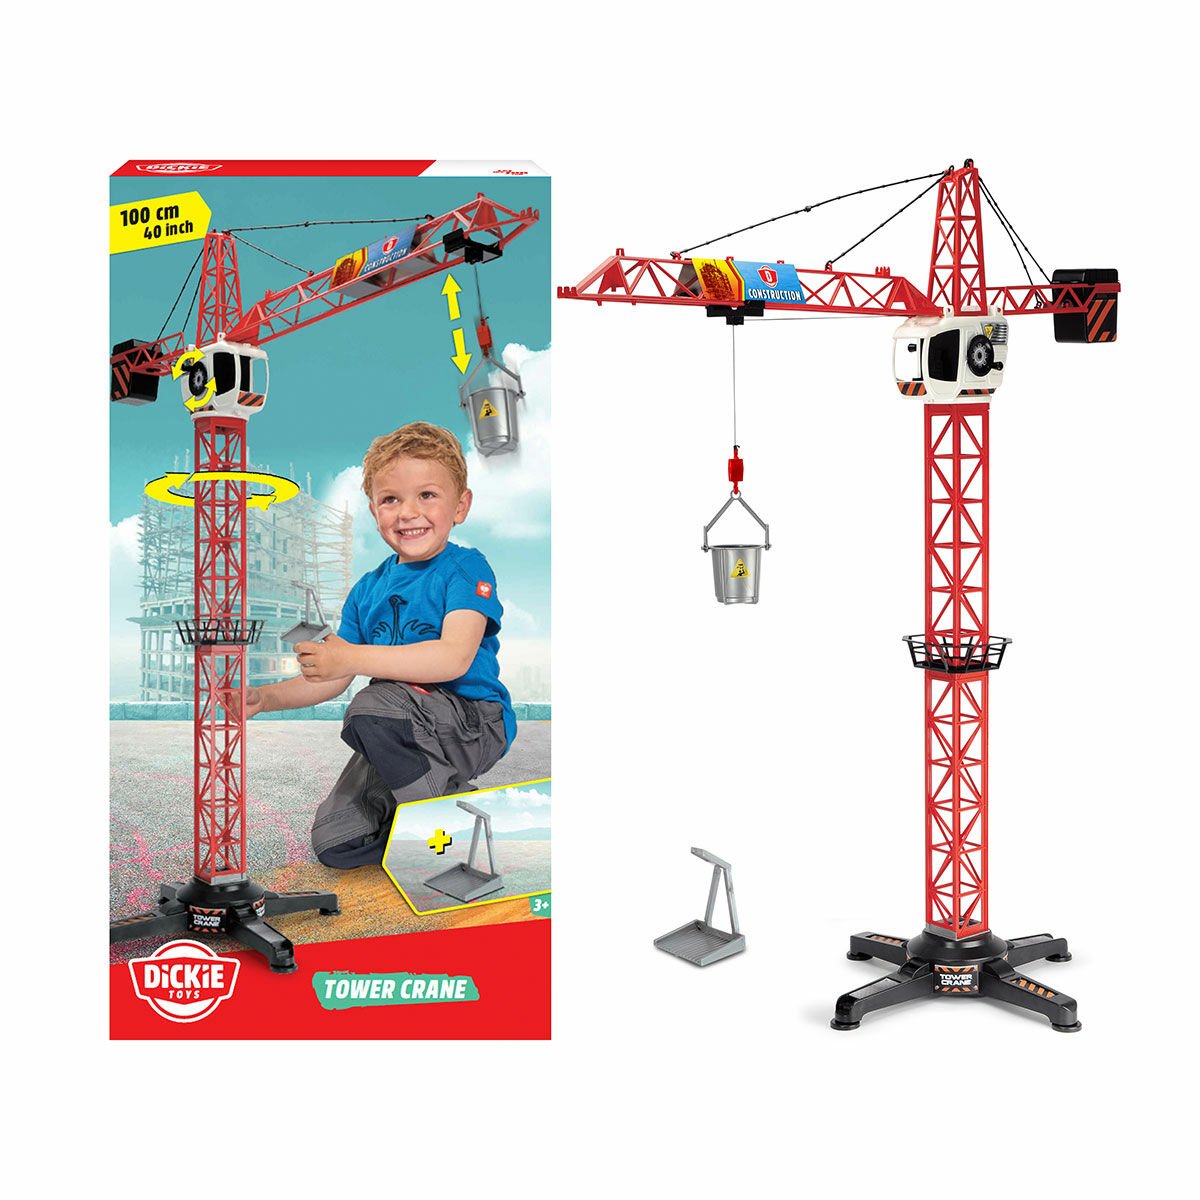 203462414 Dickie Kule Vinci-Tower Crane 100 cm